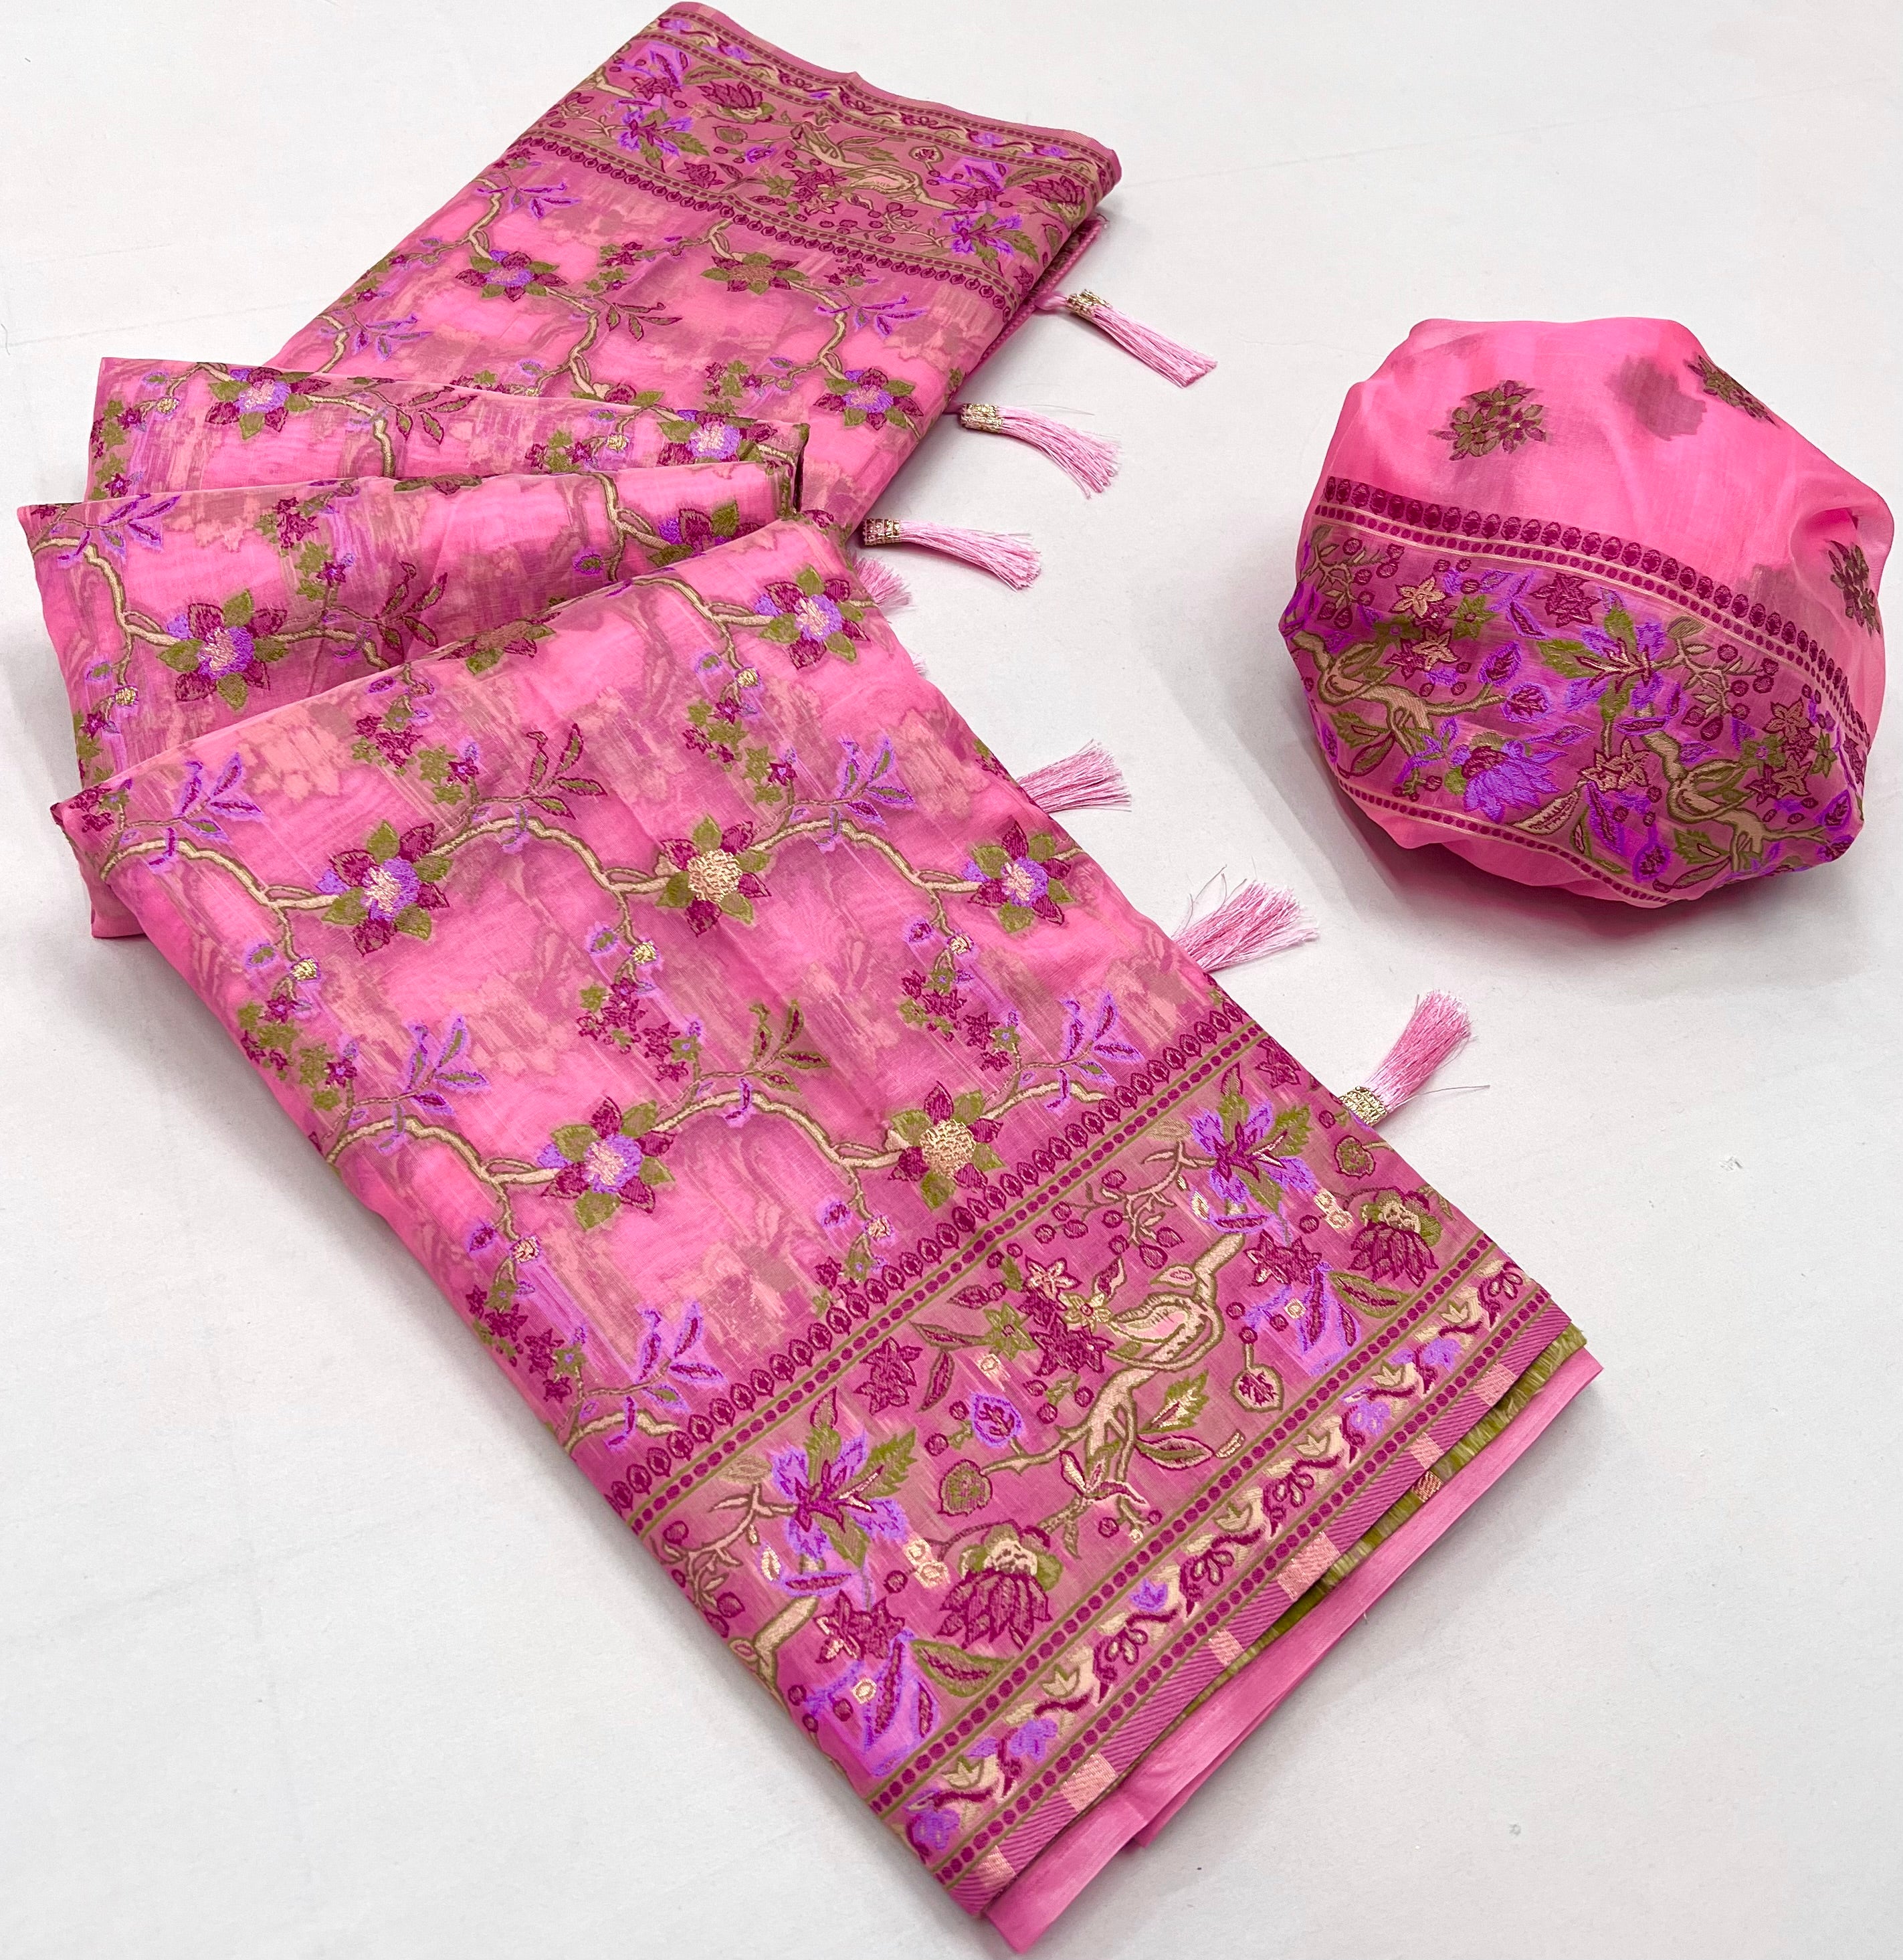 Buy MySilkLove My Pink Organza Handloom Parsi Saree Online